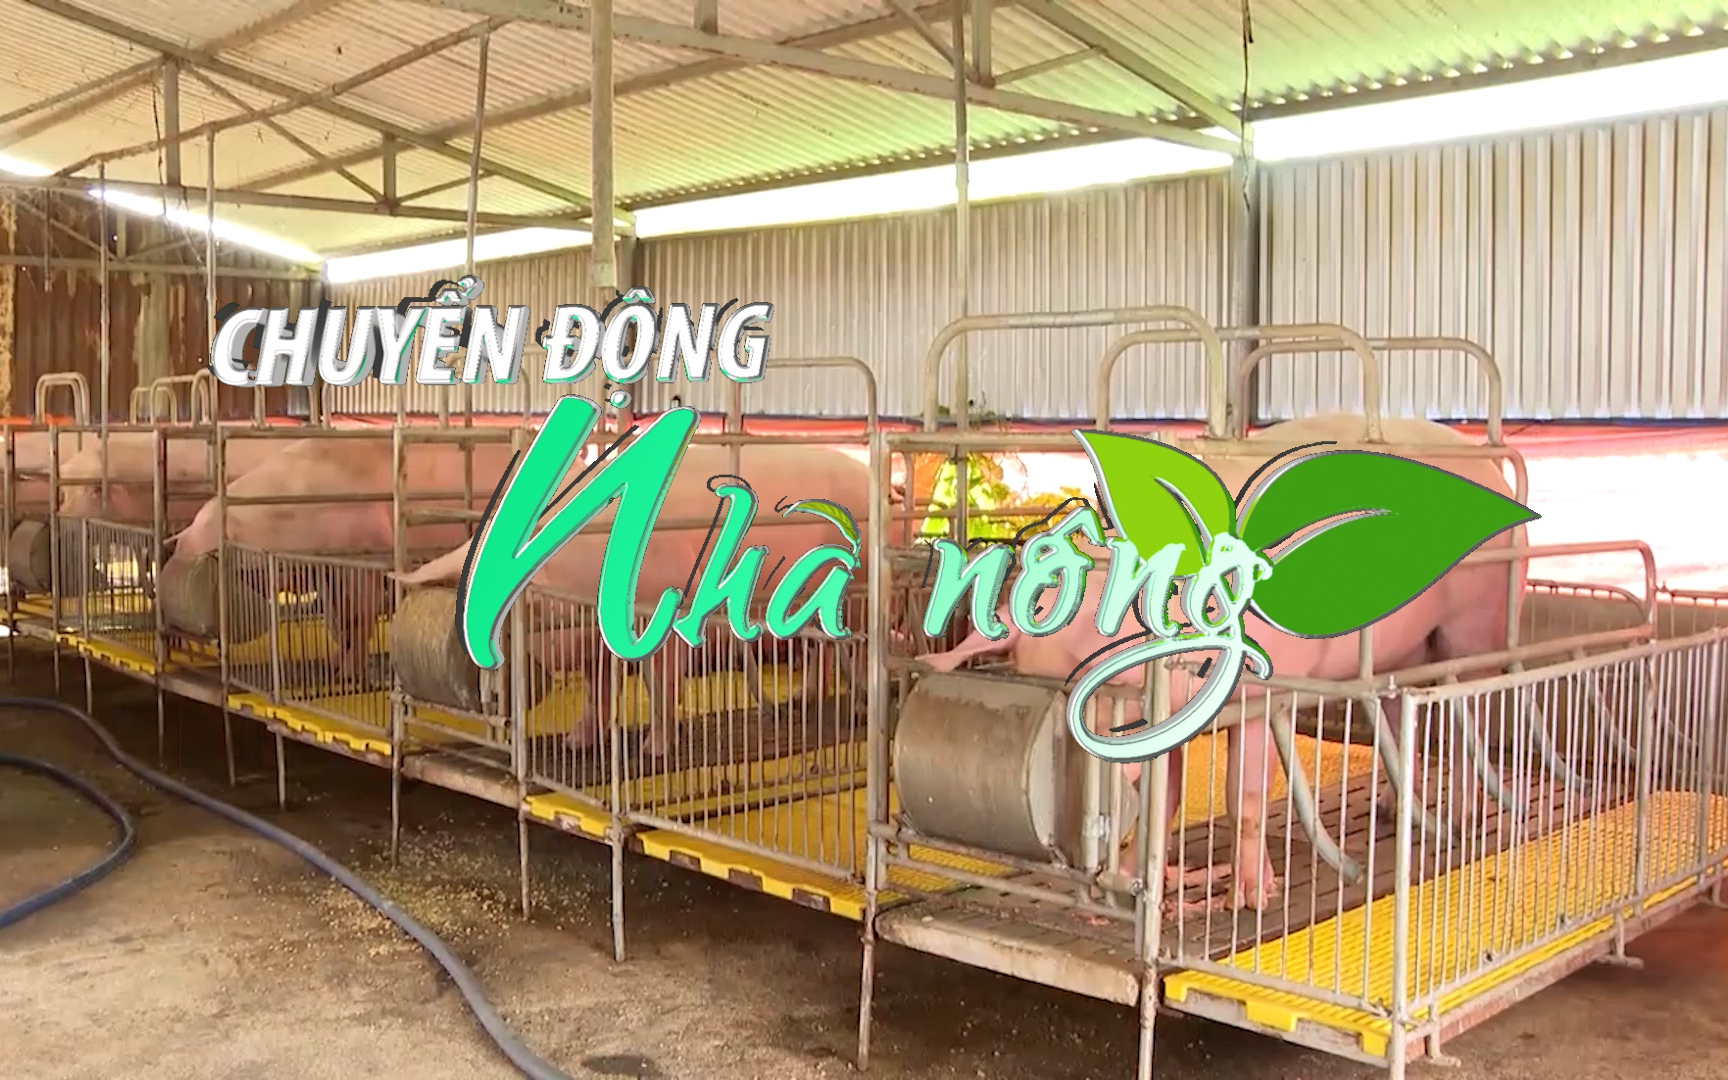 Chuyển động Nhà nông 17/10: Đến 80% trang trại chăn nuôi ở Bình Phước có quy mô lớn